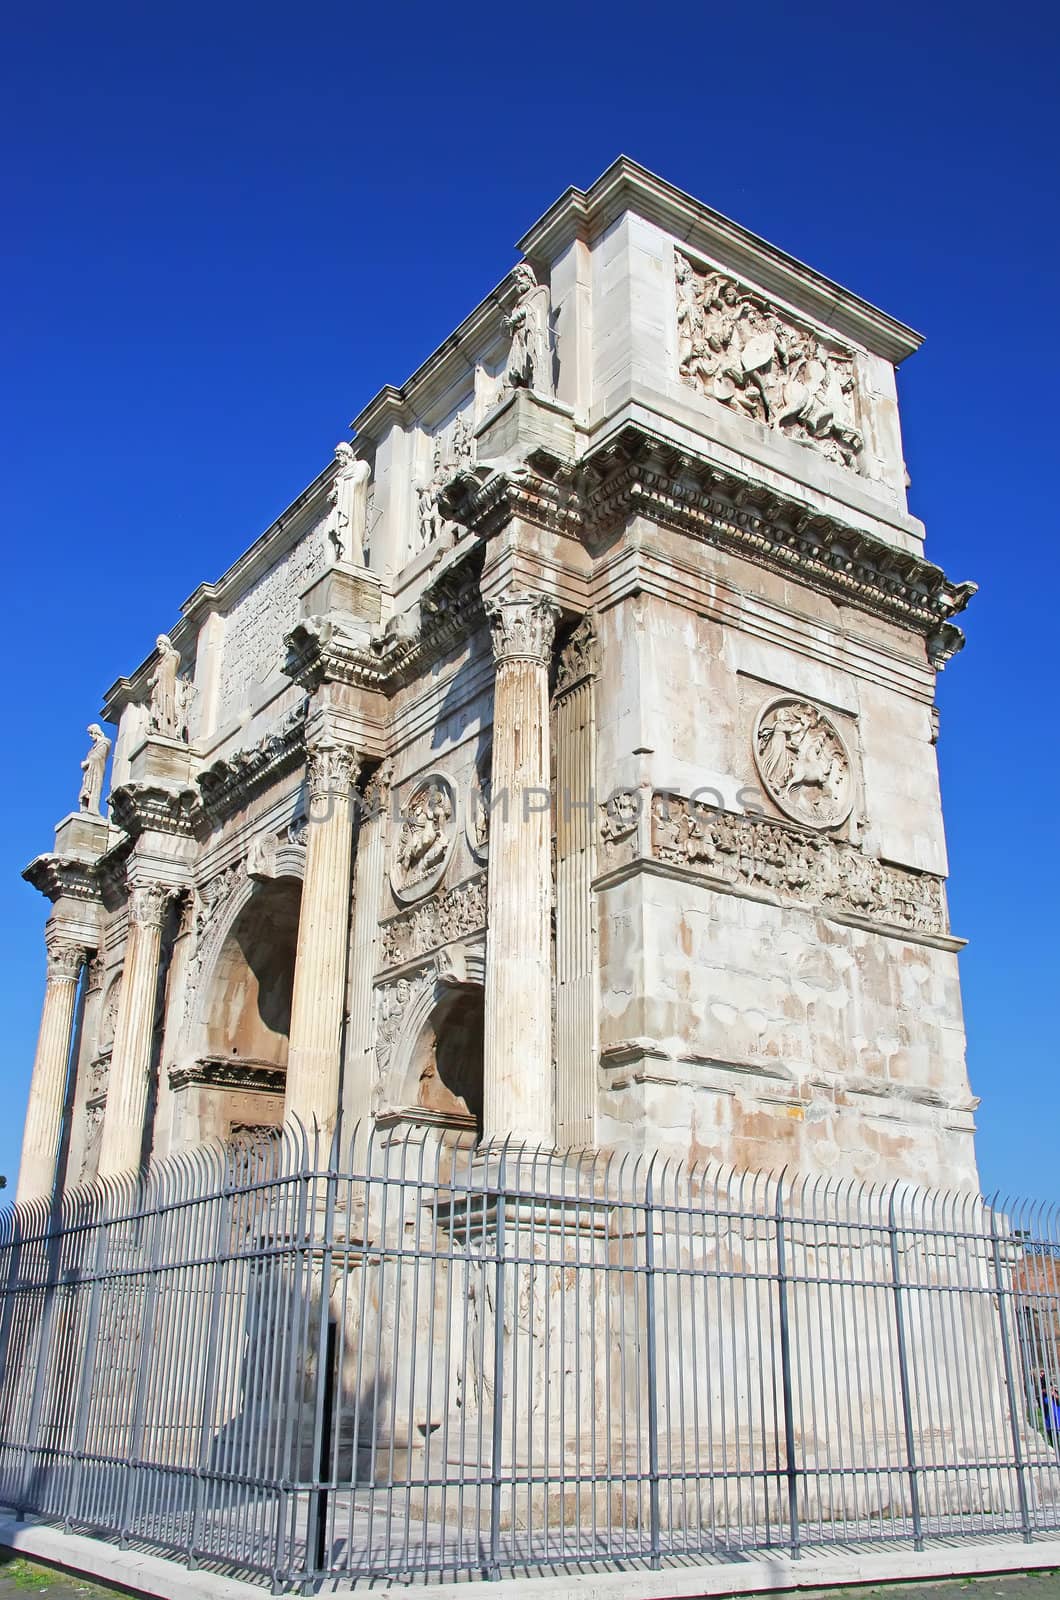 Arch of triumph of the roman emperor Constantin, Rome